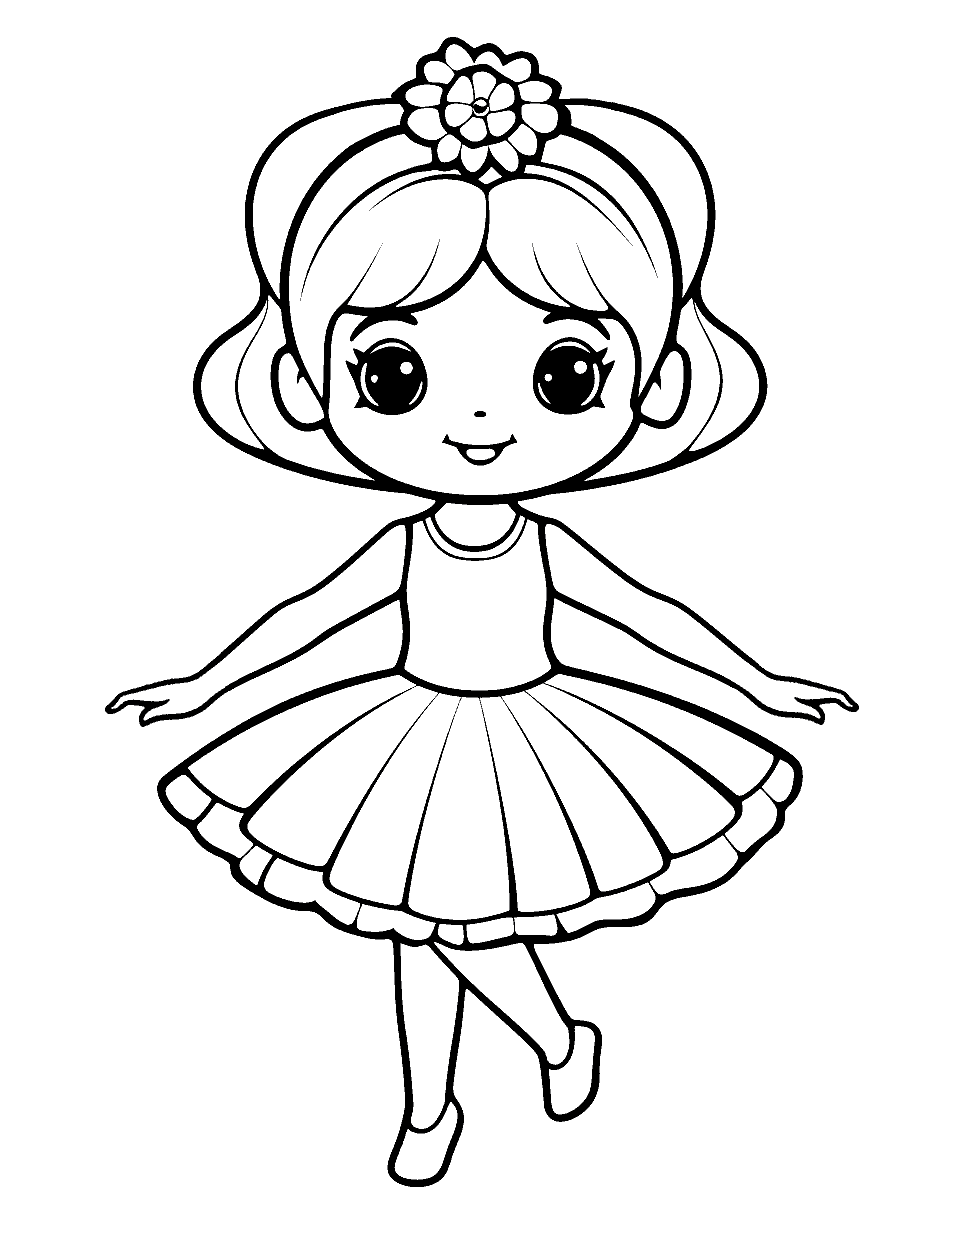 Kawaii Ballerina Coloring Page - A super cute, kawaii-inspired ballerina character.